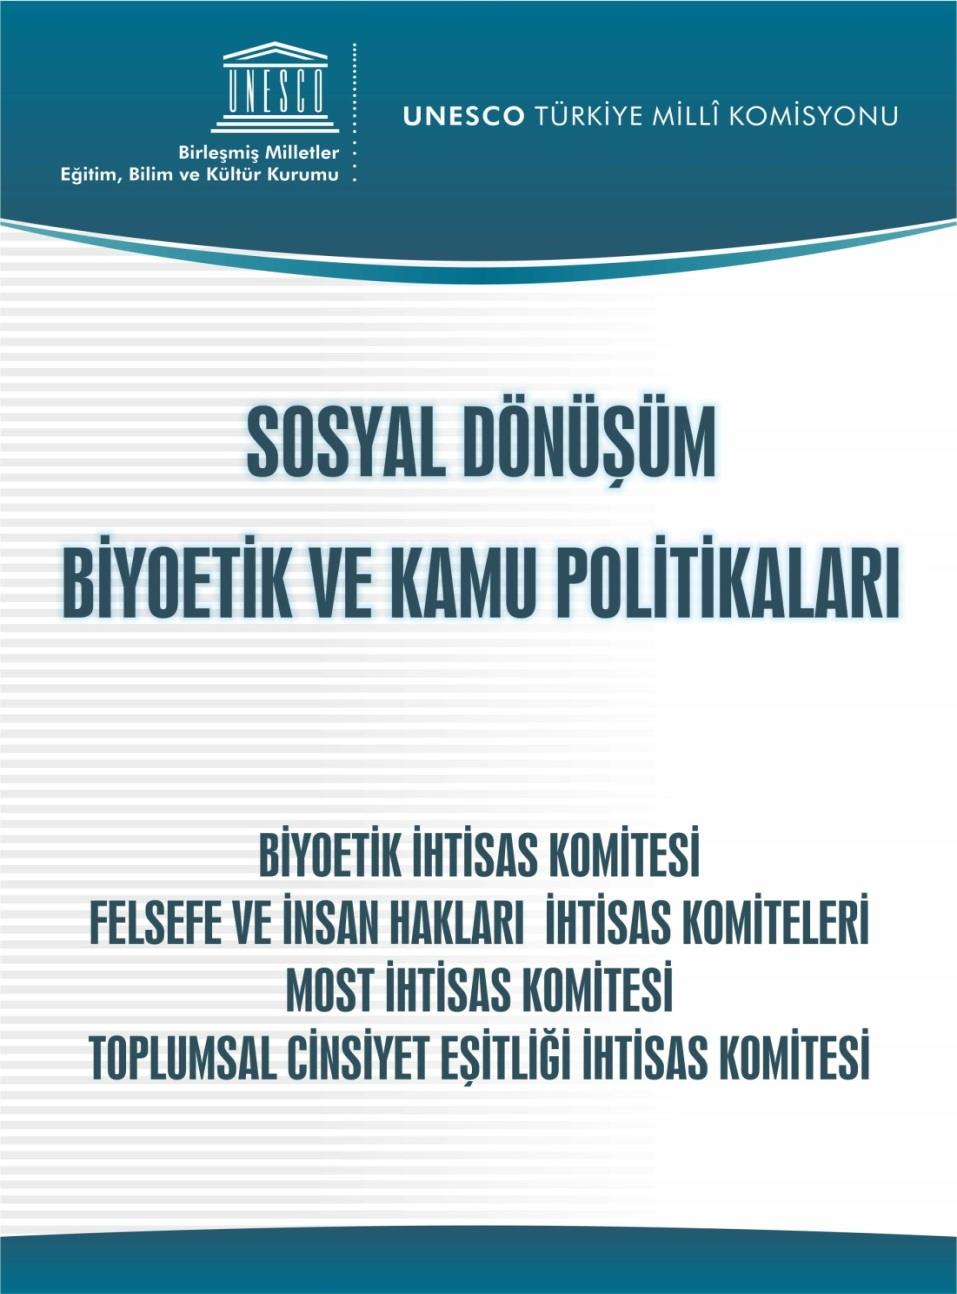 PROGRAM KONULARI 12-13 Nisan 2012 UNESCO ve Kadın Çalışmaları Toplumda Kadın: İş Yaşamında Toplumsal Cinsiyet Eşitliği için Politikalar Türkiye'de Yaşlanma, Demografik Değişimin Sorunları Türkiye de